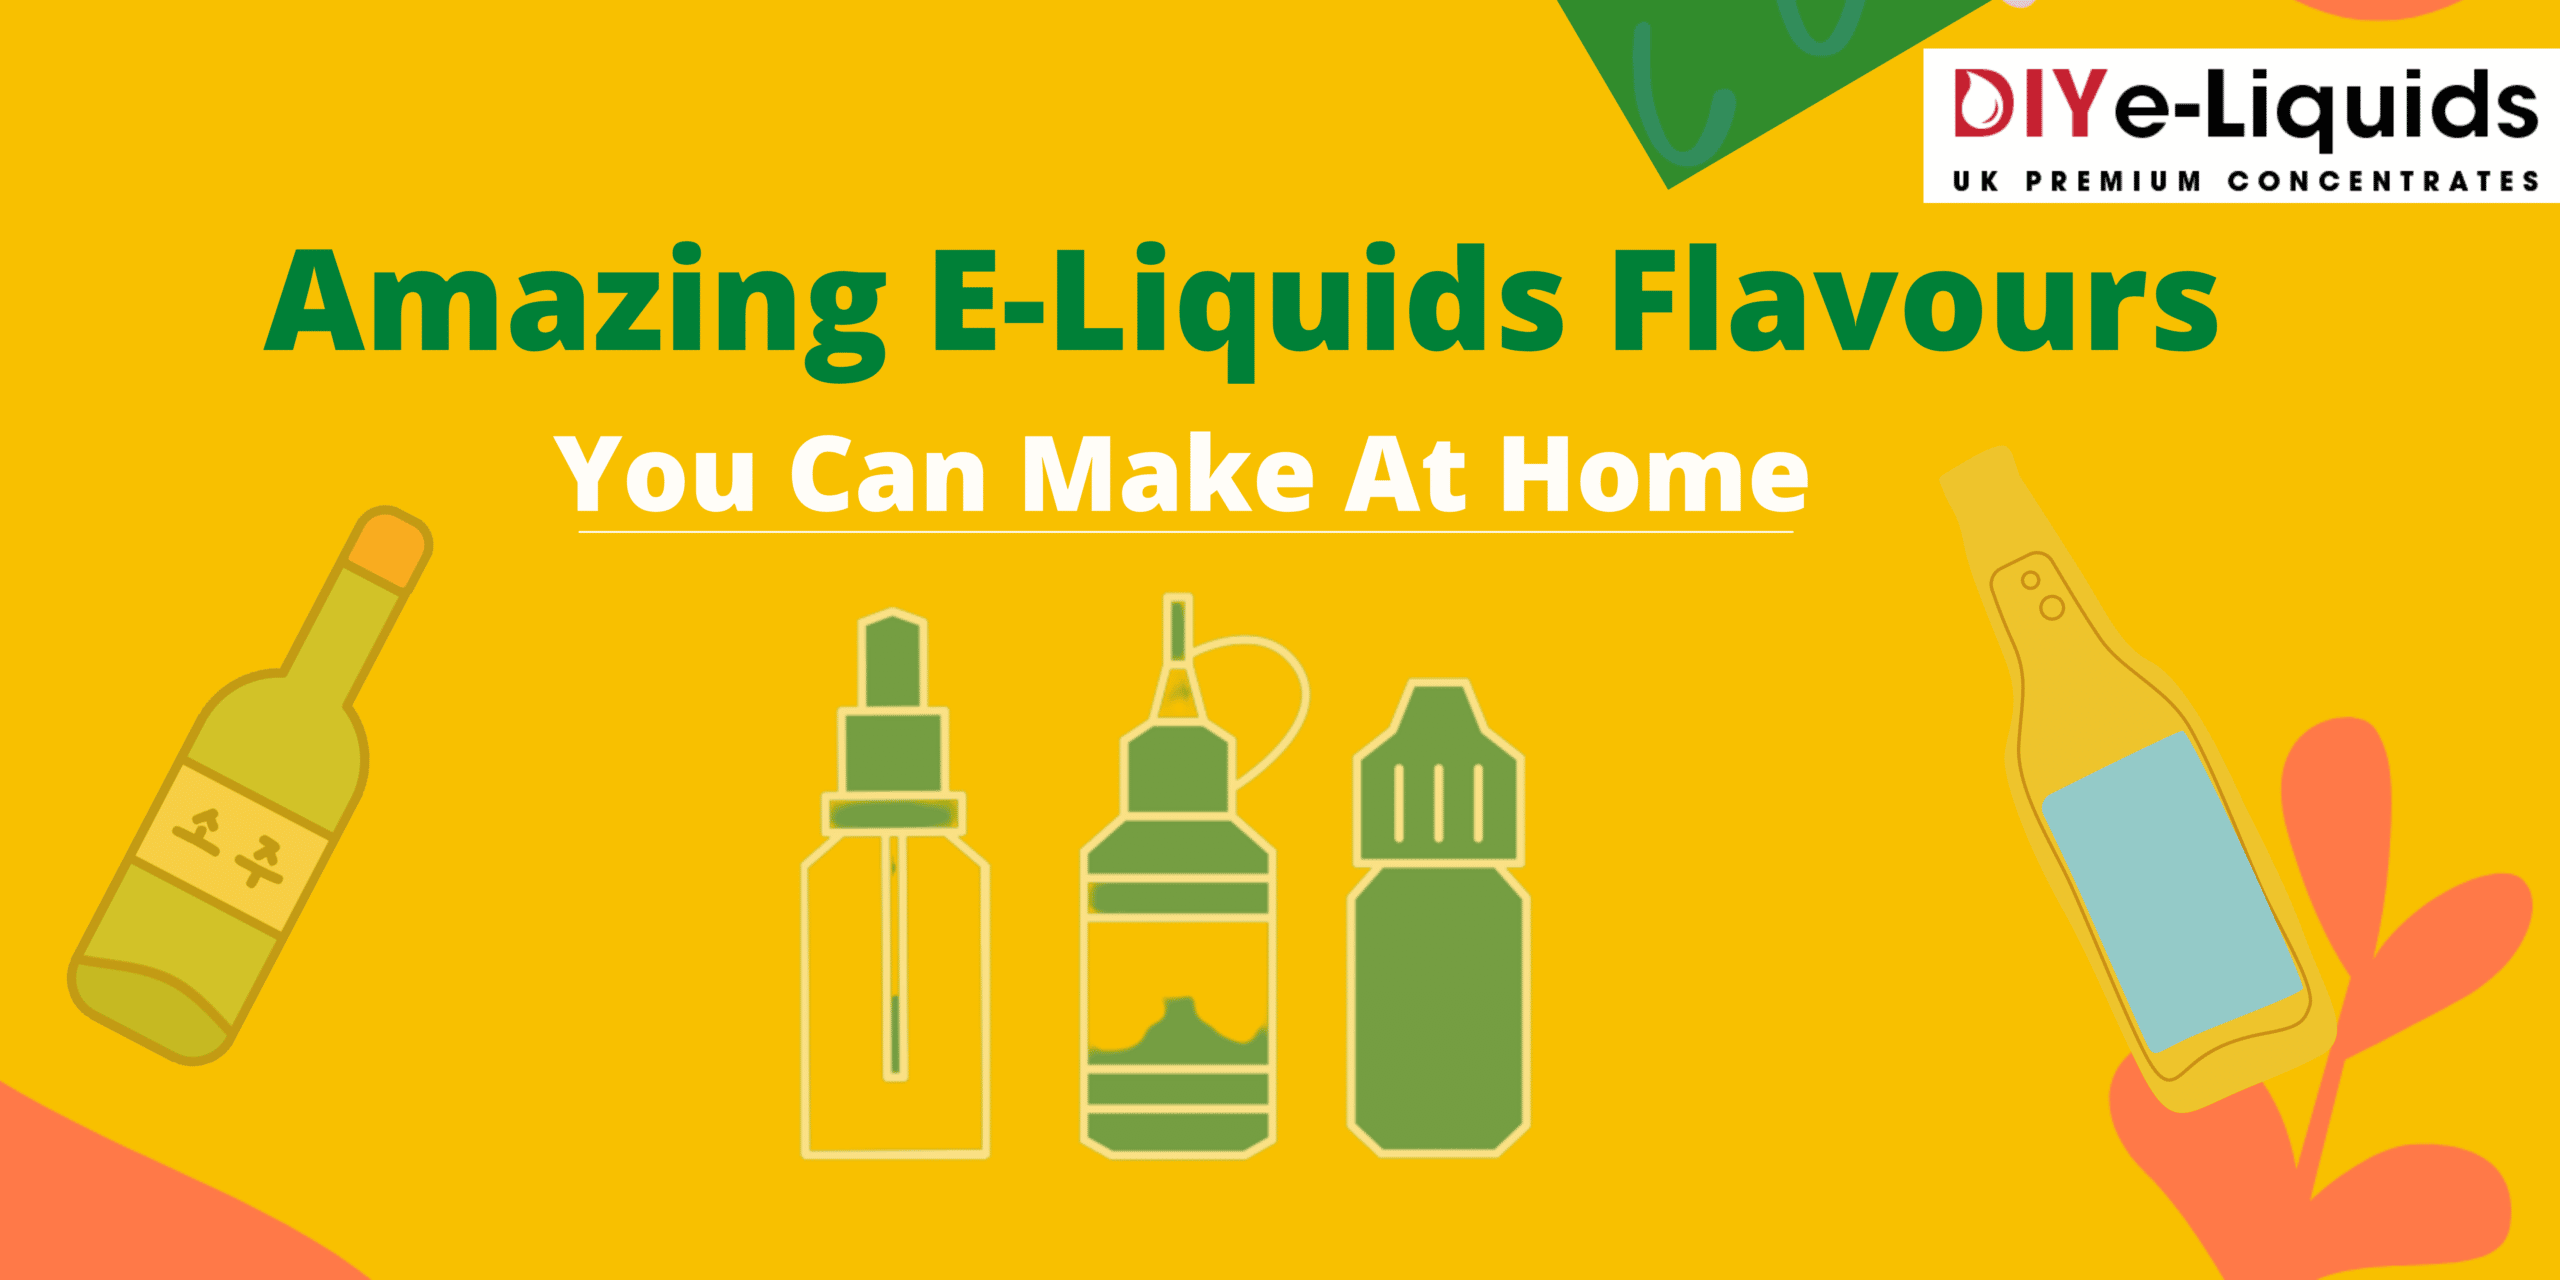 Amazing E-Liquids flavours